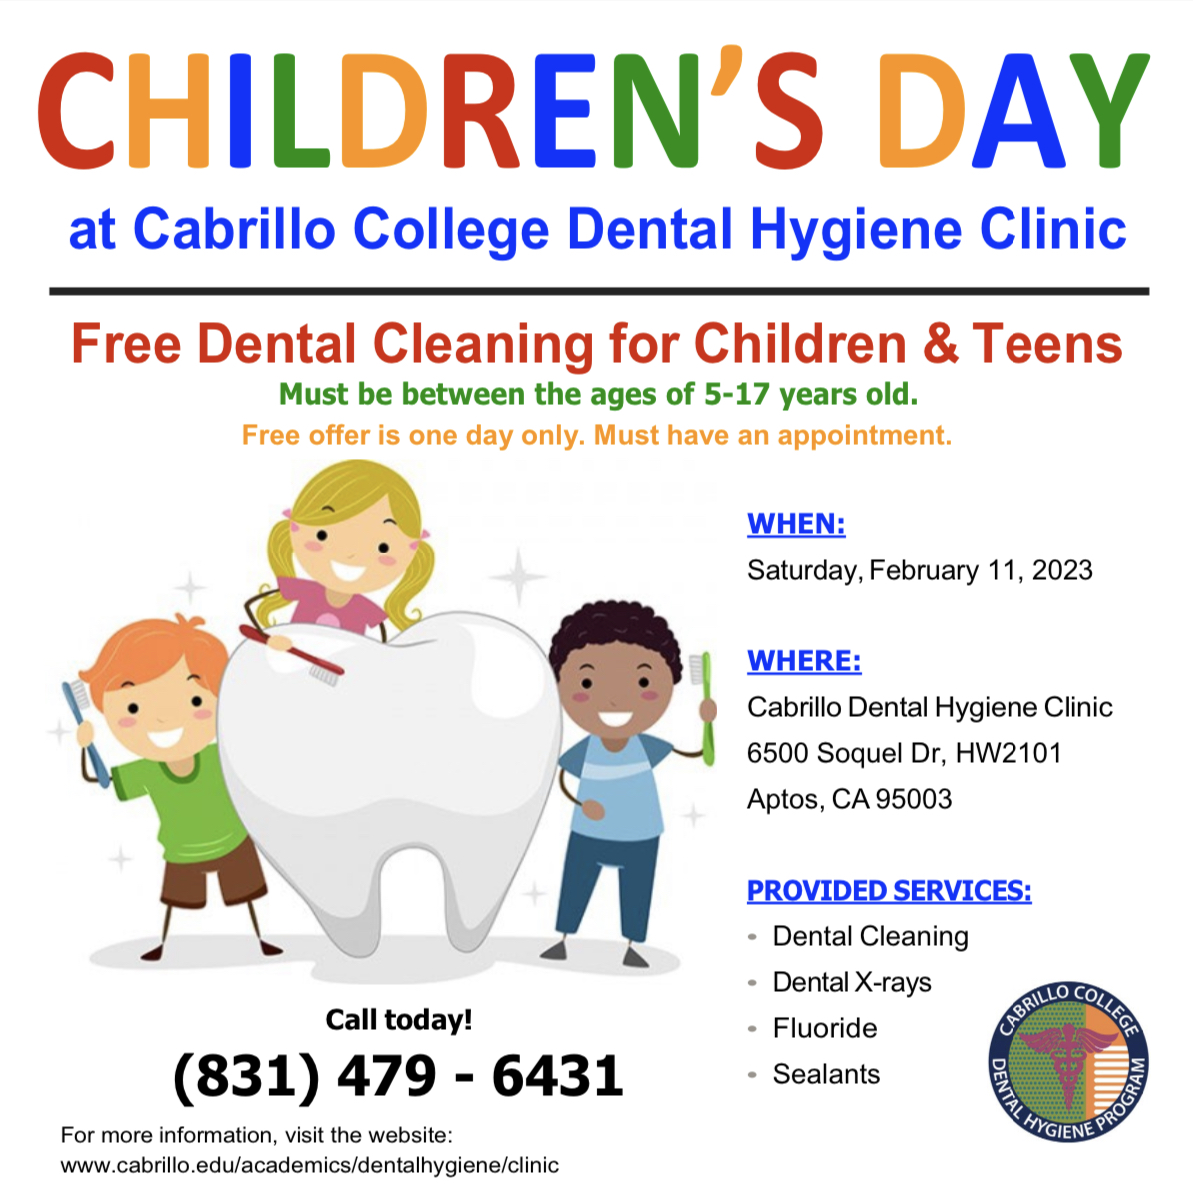 Children's Dentist Day